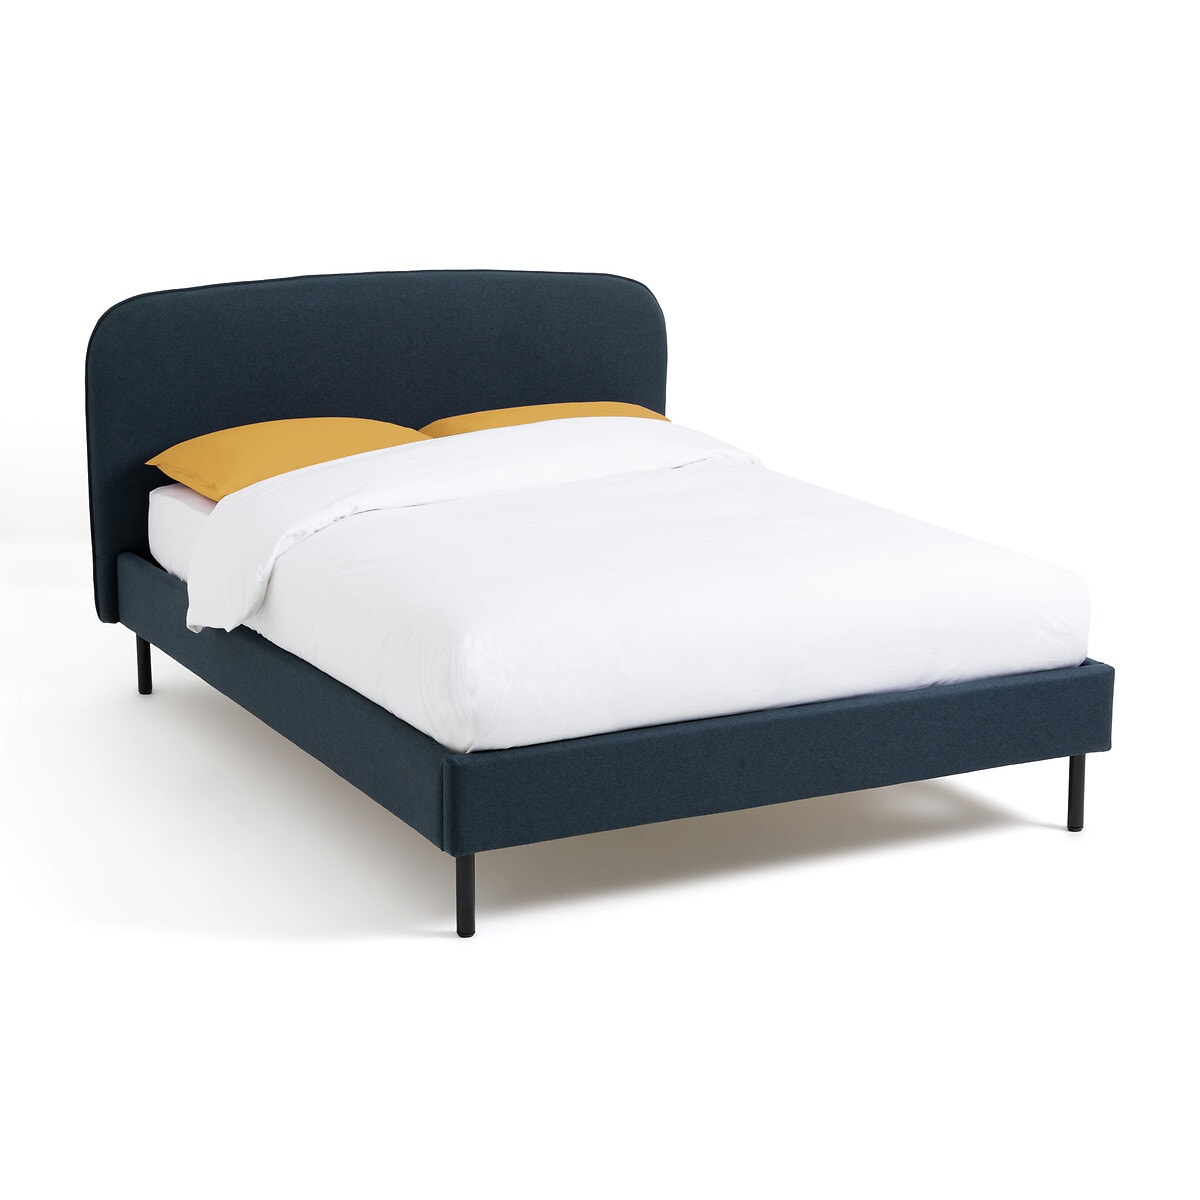 Καπιτοναρισμένο κρεβάτι με τάβλες, Conto